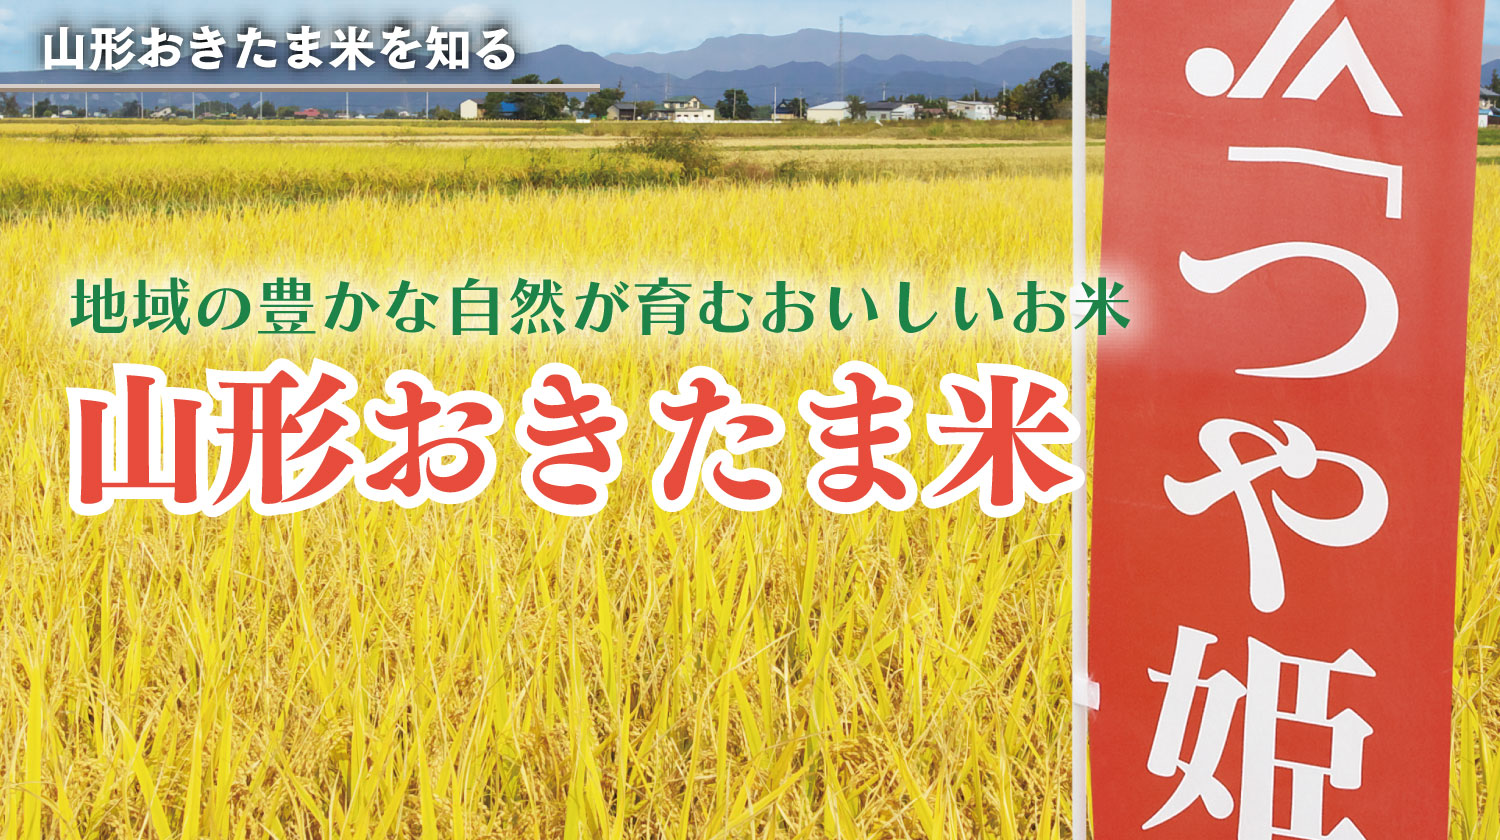 地域の豊かな自然が育むおいしいお米「山形おきたま産米」